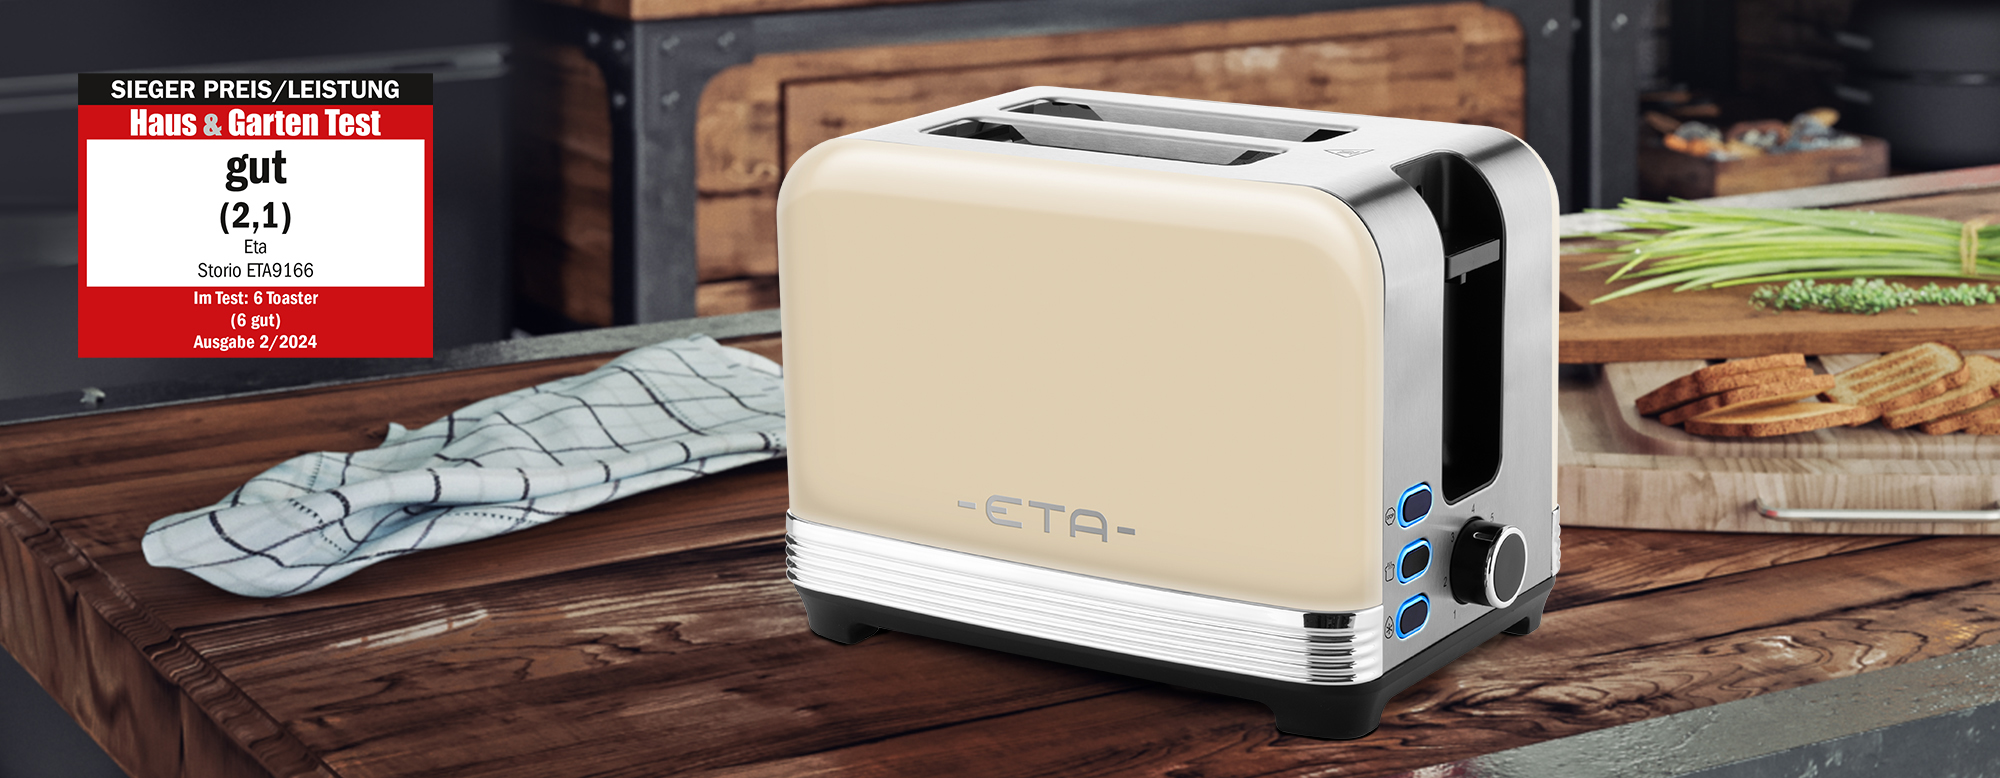 Toaster ETA Storio